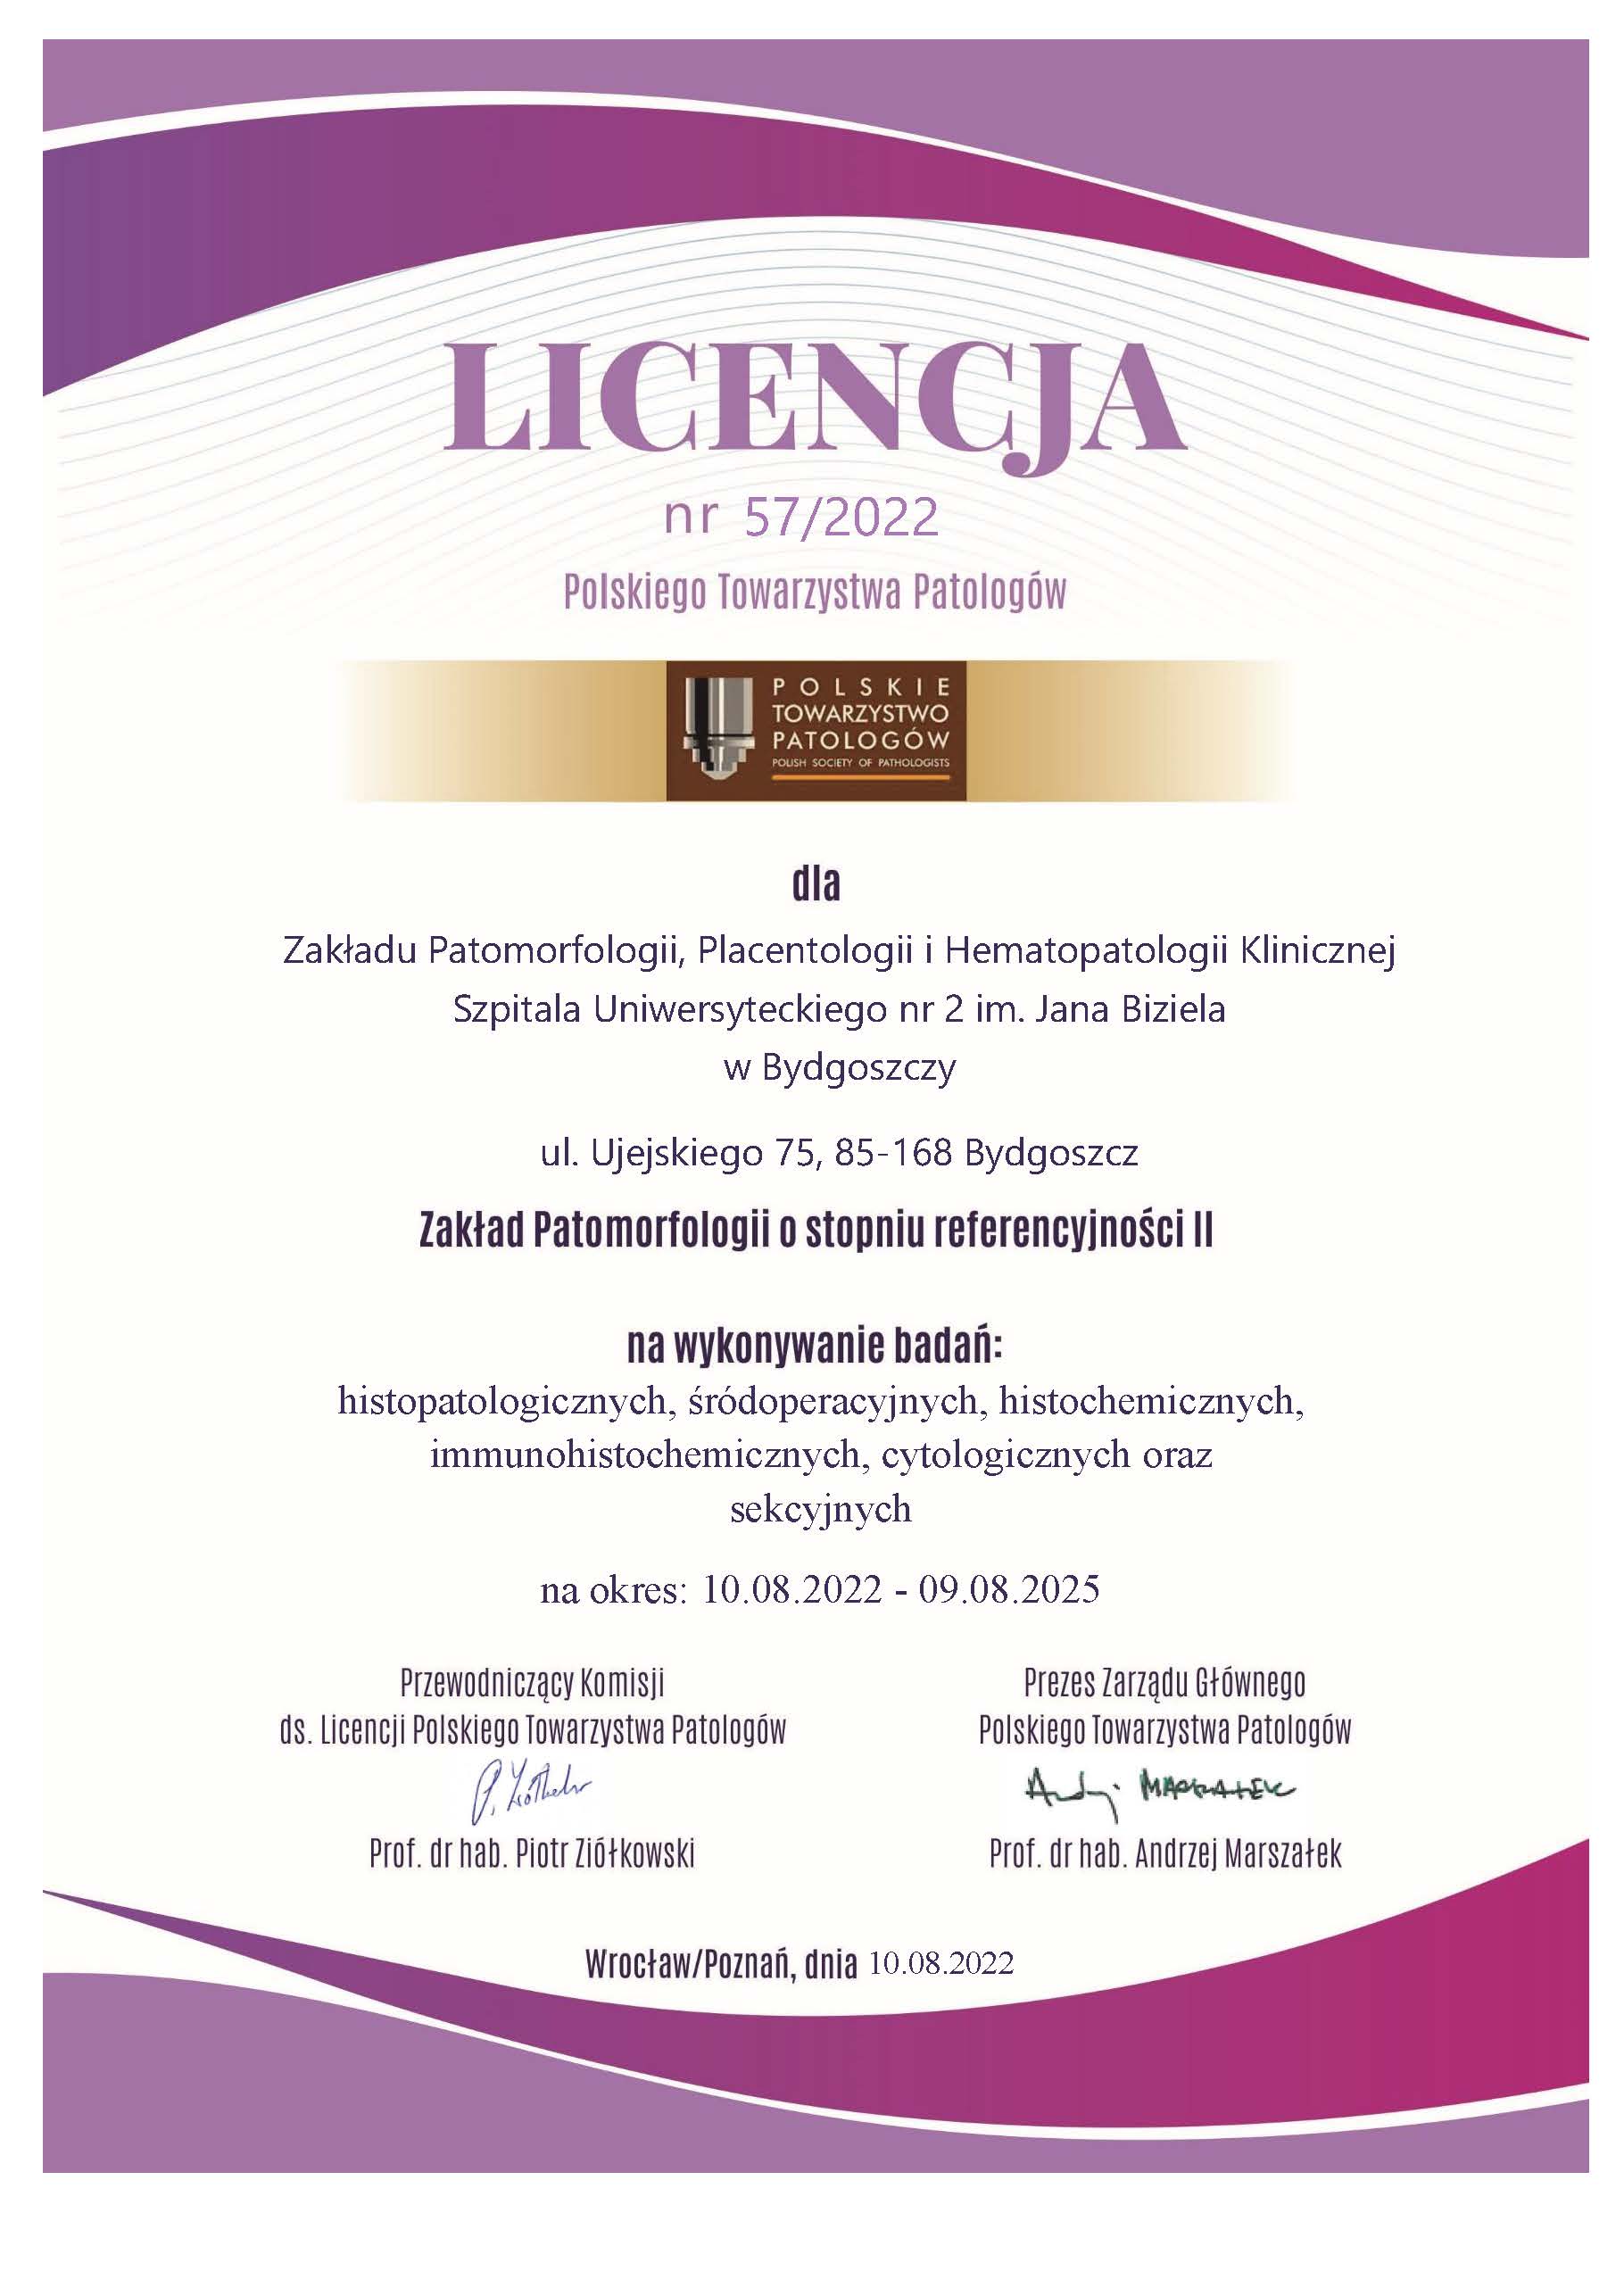 Licencja II stopnia referencyjności dla Zakładu Patomorfologii Placentologii i Hematopatologii